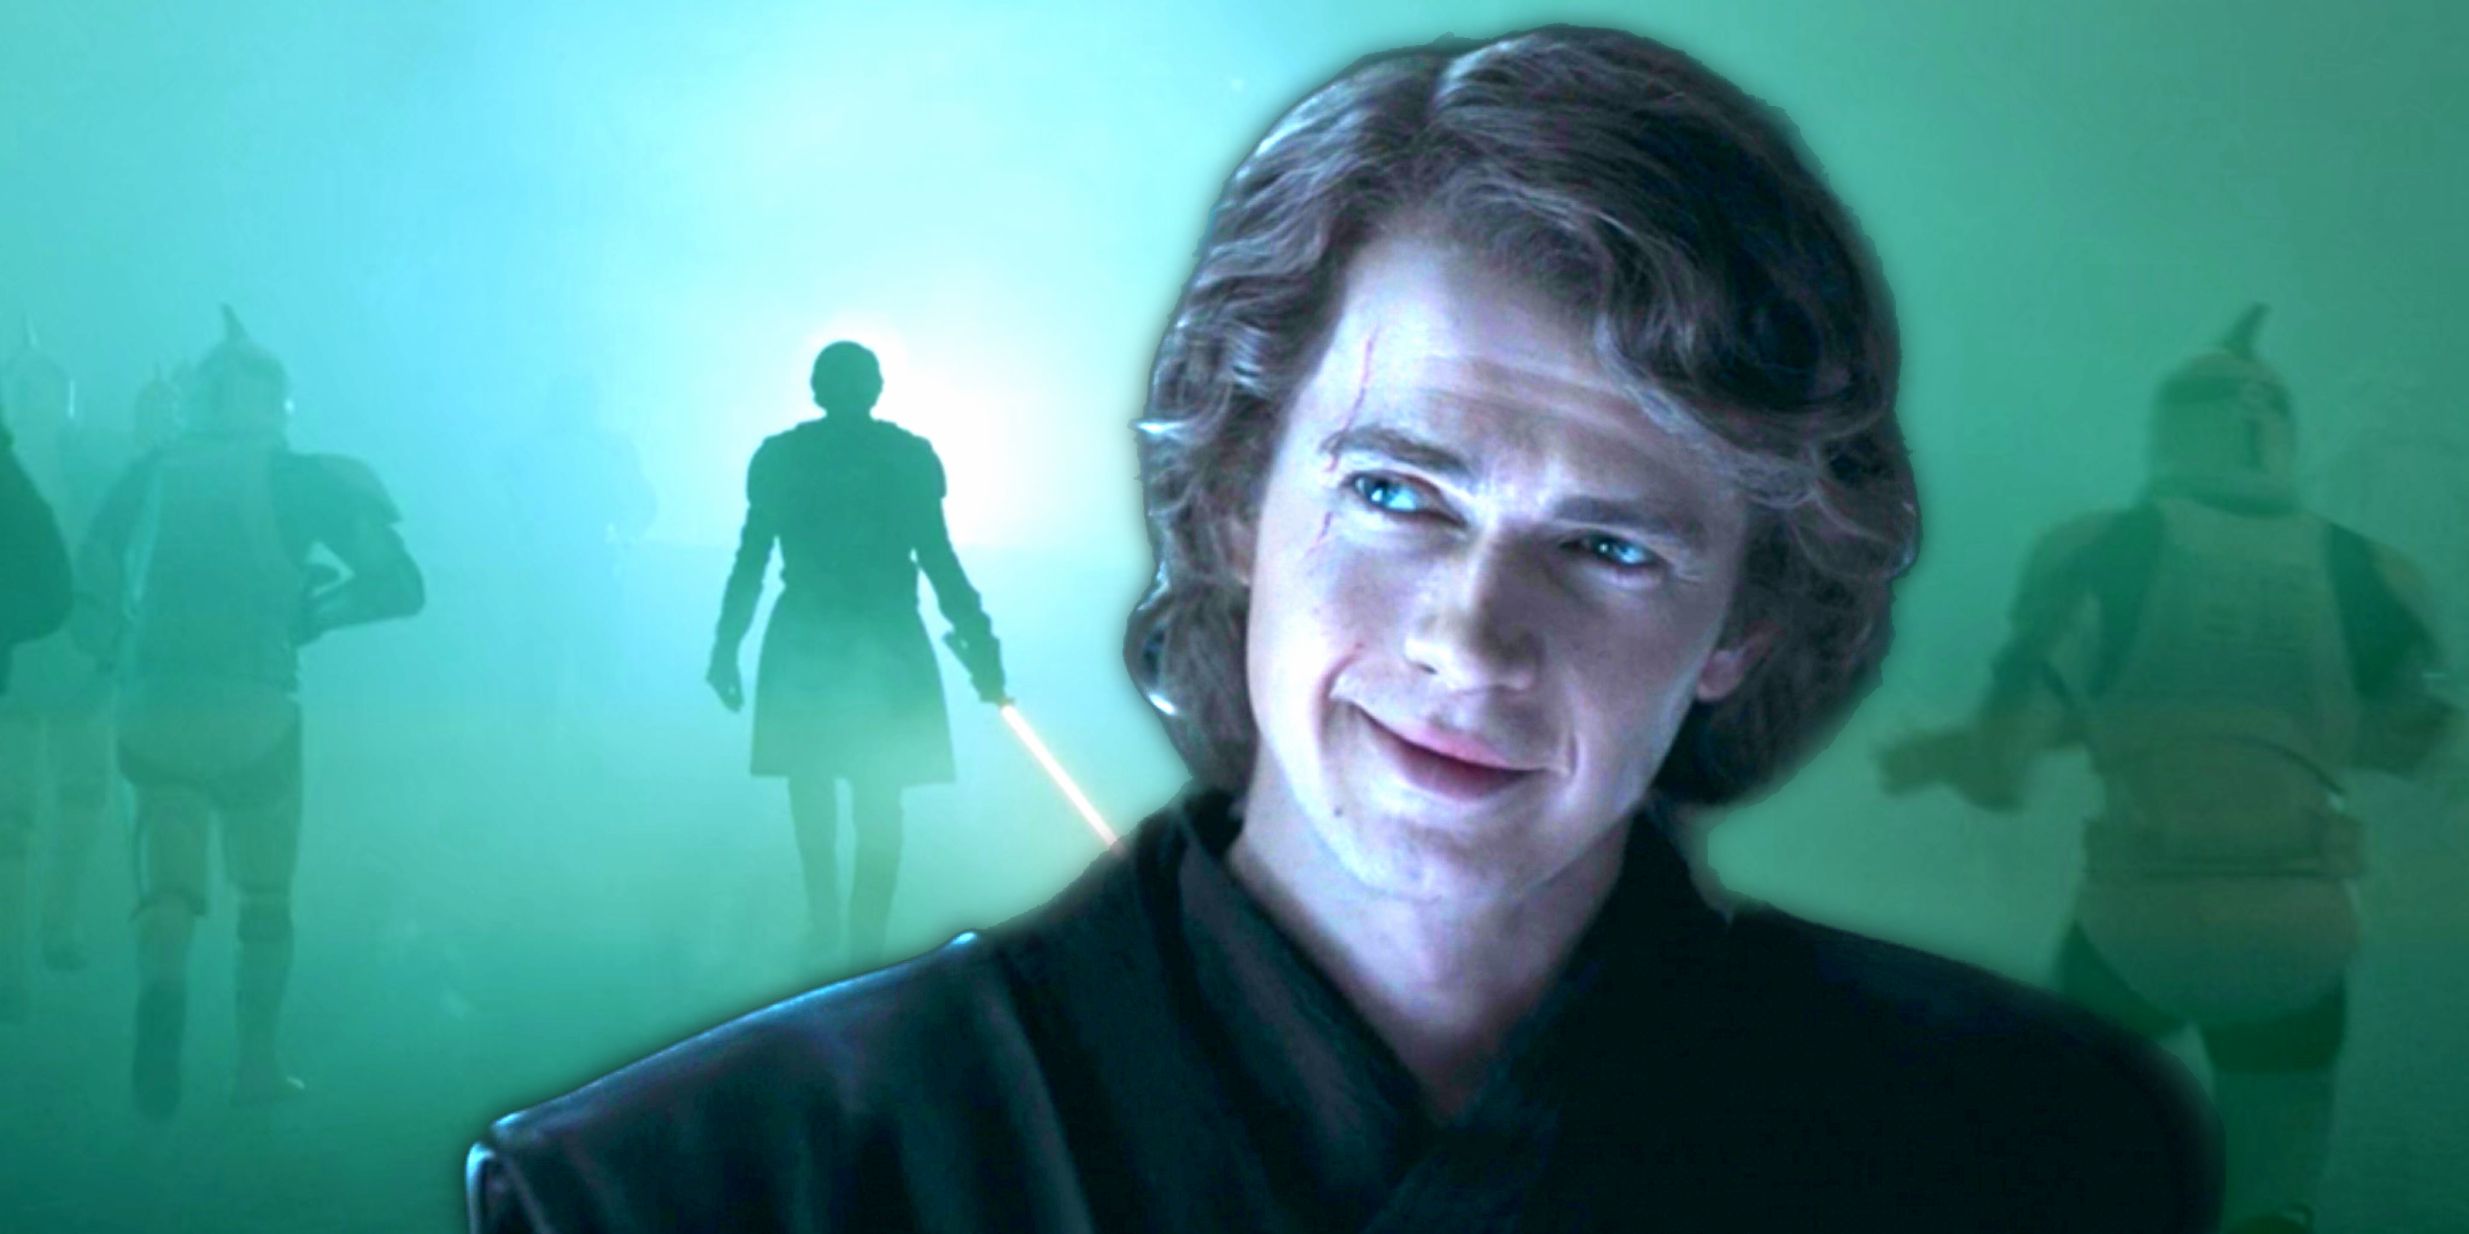 Hayden Christensen da pistas sobre el destino de Anakin Skywalker y lo que realmente significa el equilibrio en la fuerza